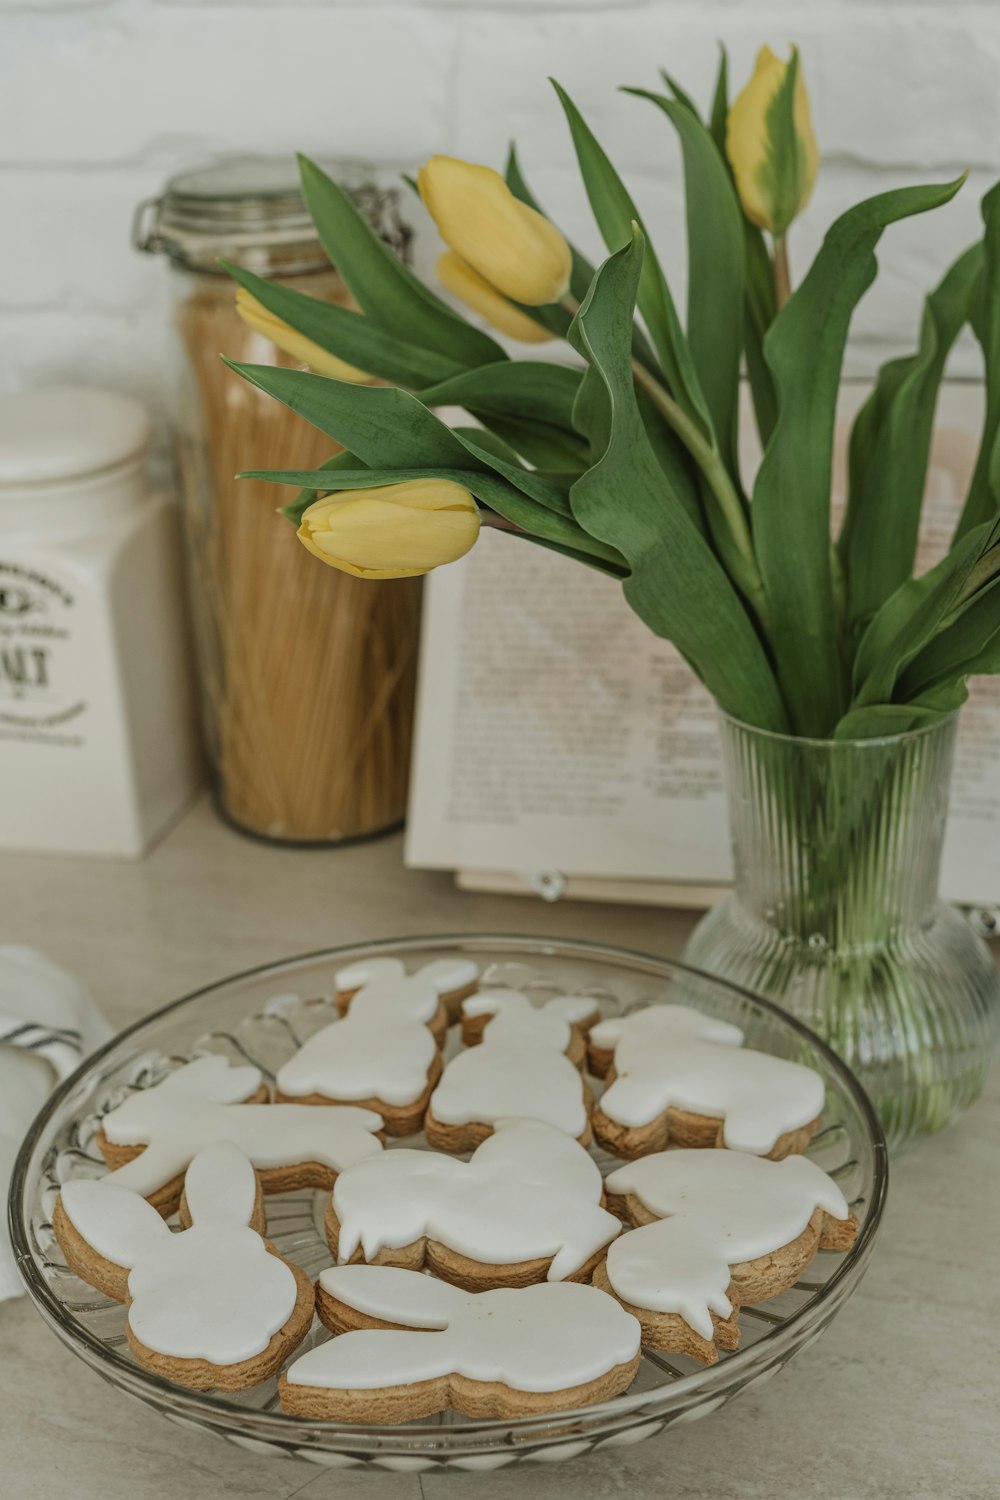 Un plato de galletas sentado en una mesa junto a un jarrón de tulipanes